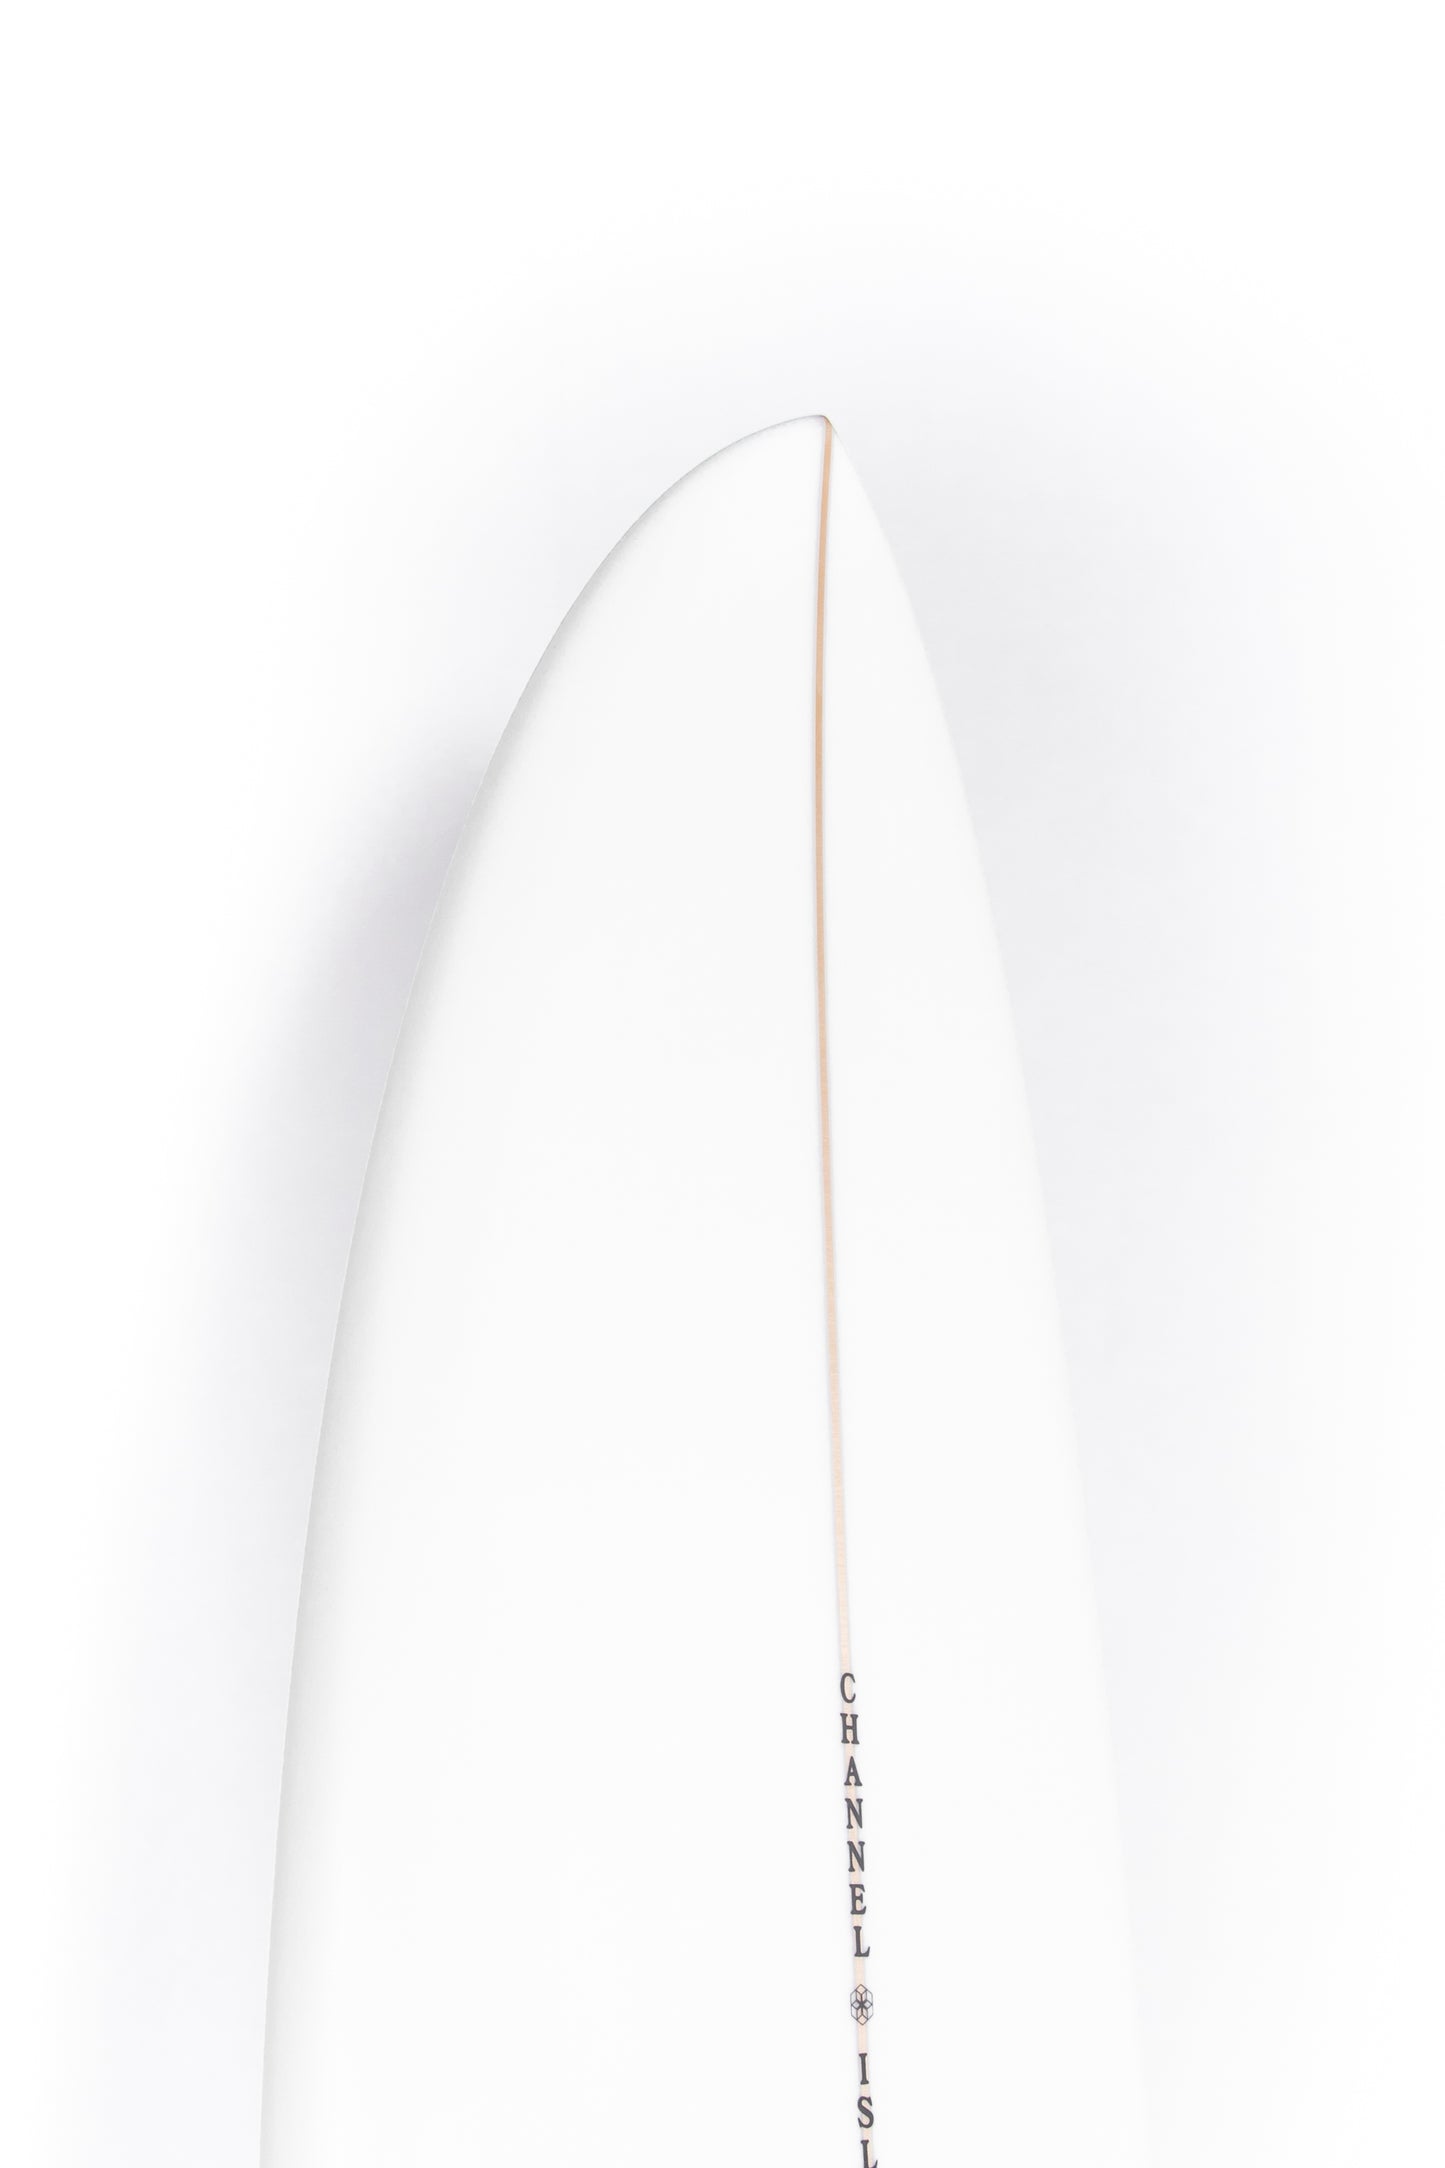 
                  
                    Pukas Surf Shop - Channel Islands - CI MID - 7'2" x 21 1/4 x 2 13/16 - 47,30L - CI32556
                  
                